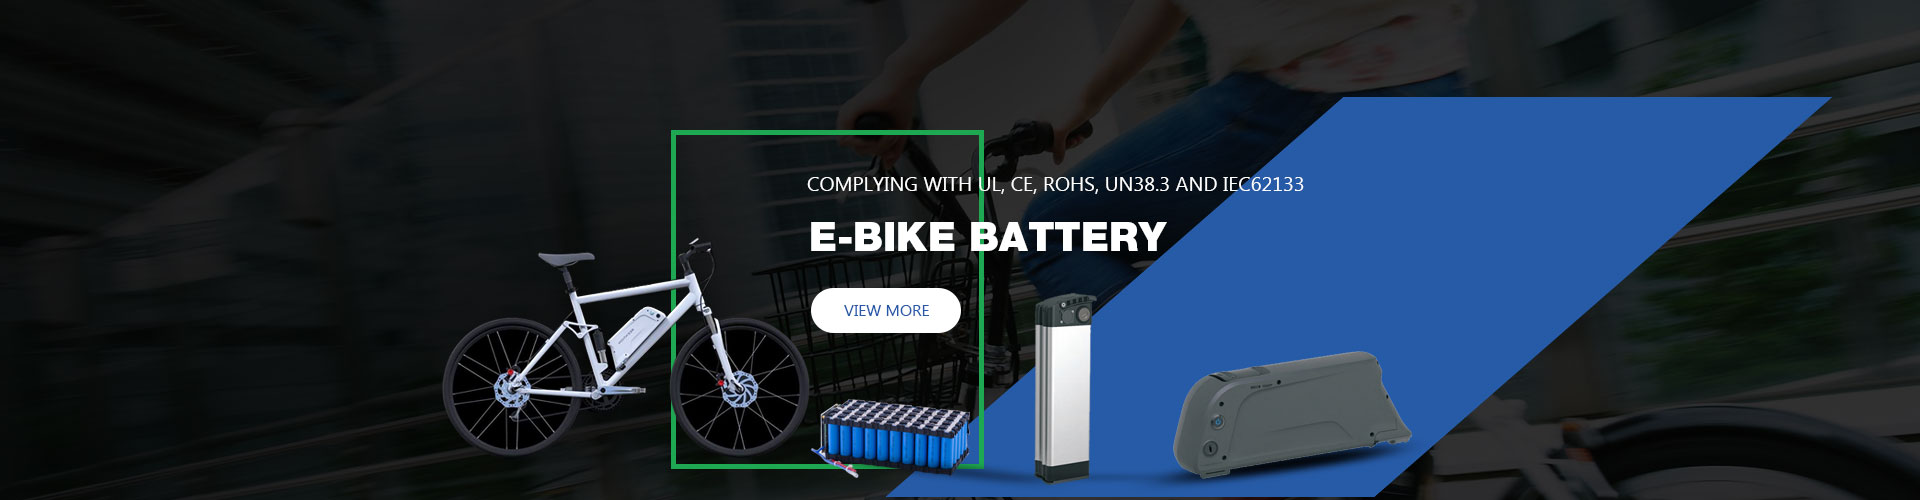 E-bike Battery